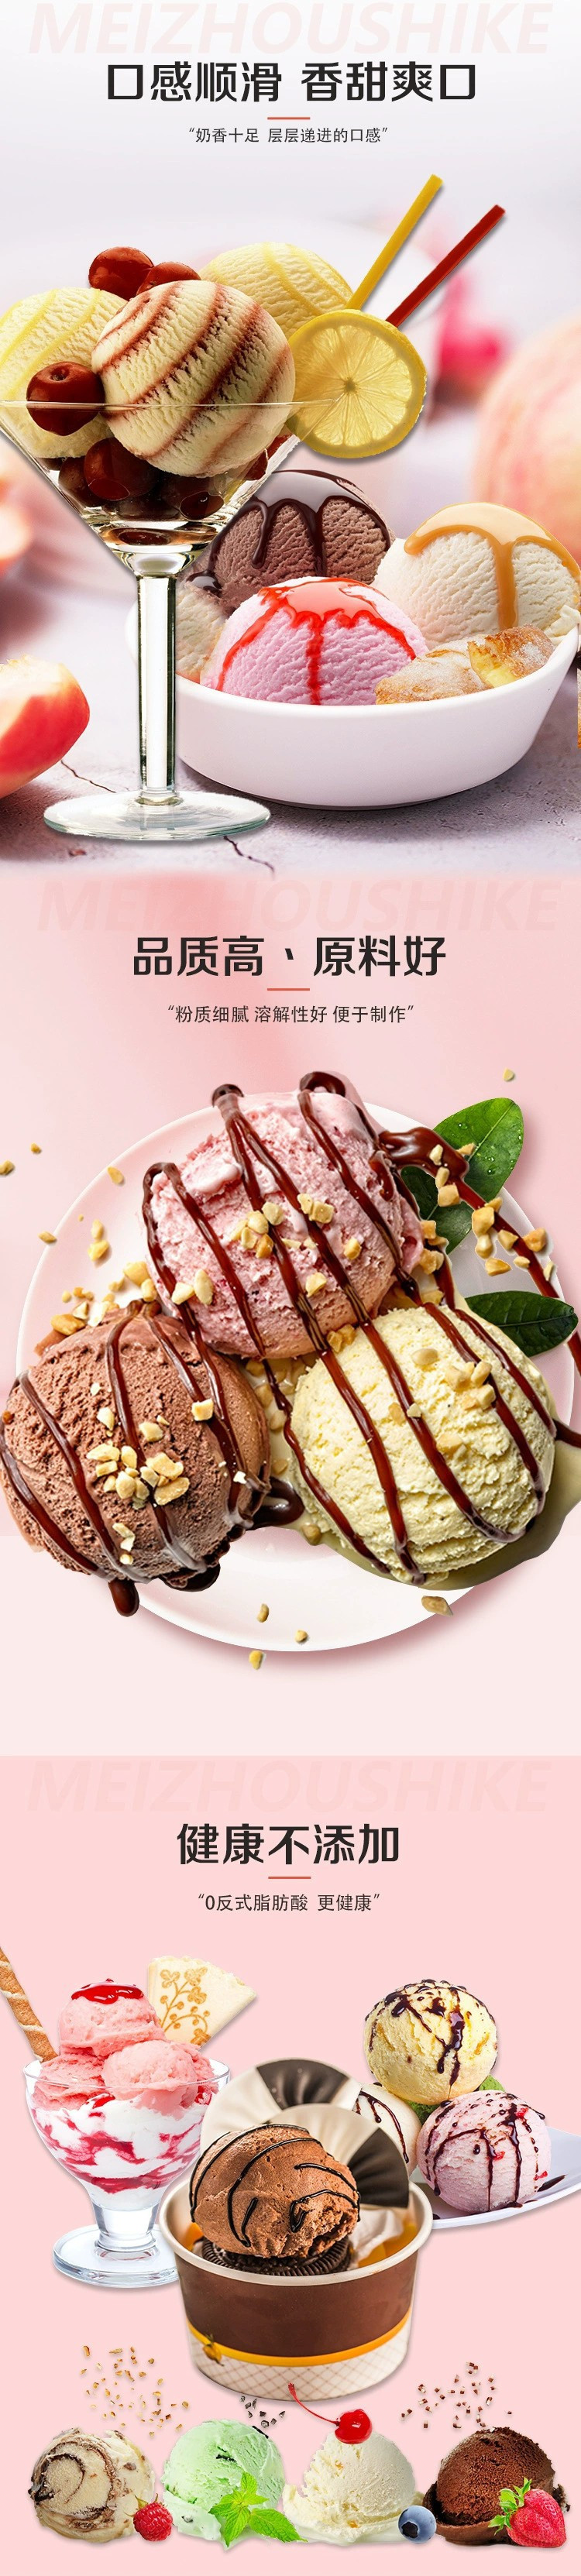 【券后19.9】美粥食客冰淇淋粉100g7袋diy雪糕粉自制冰粉7种口味各一袋